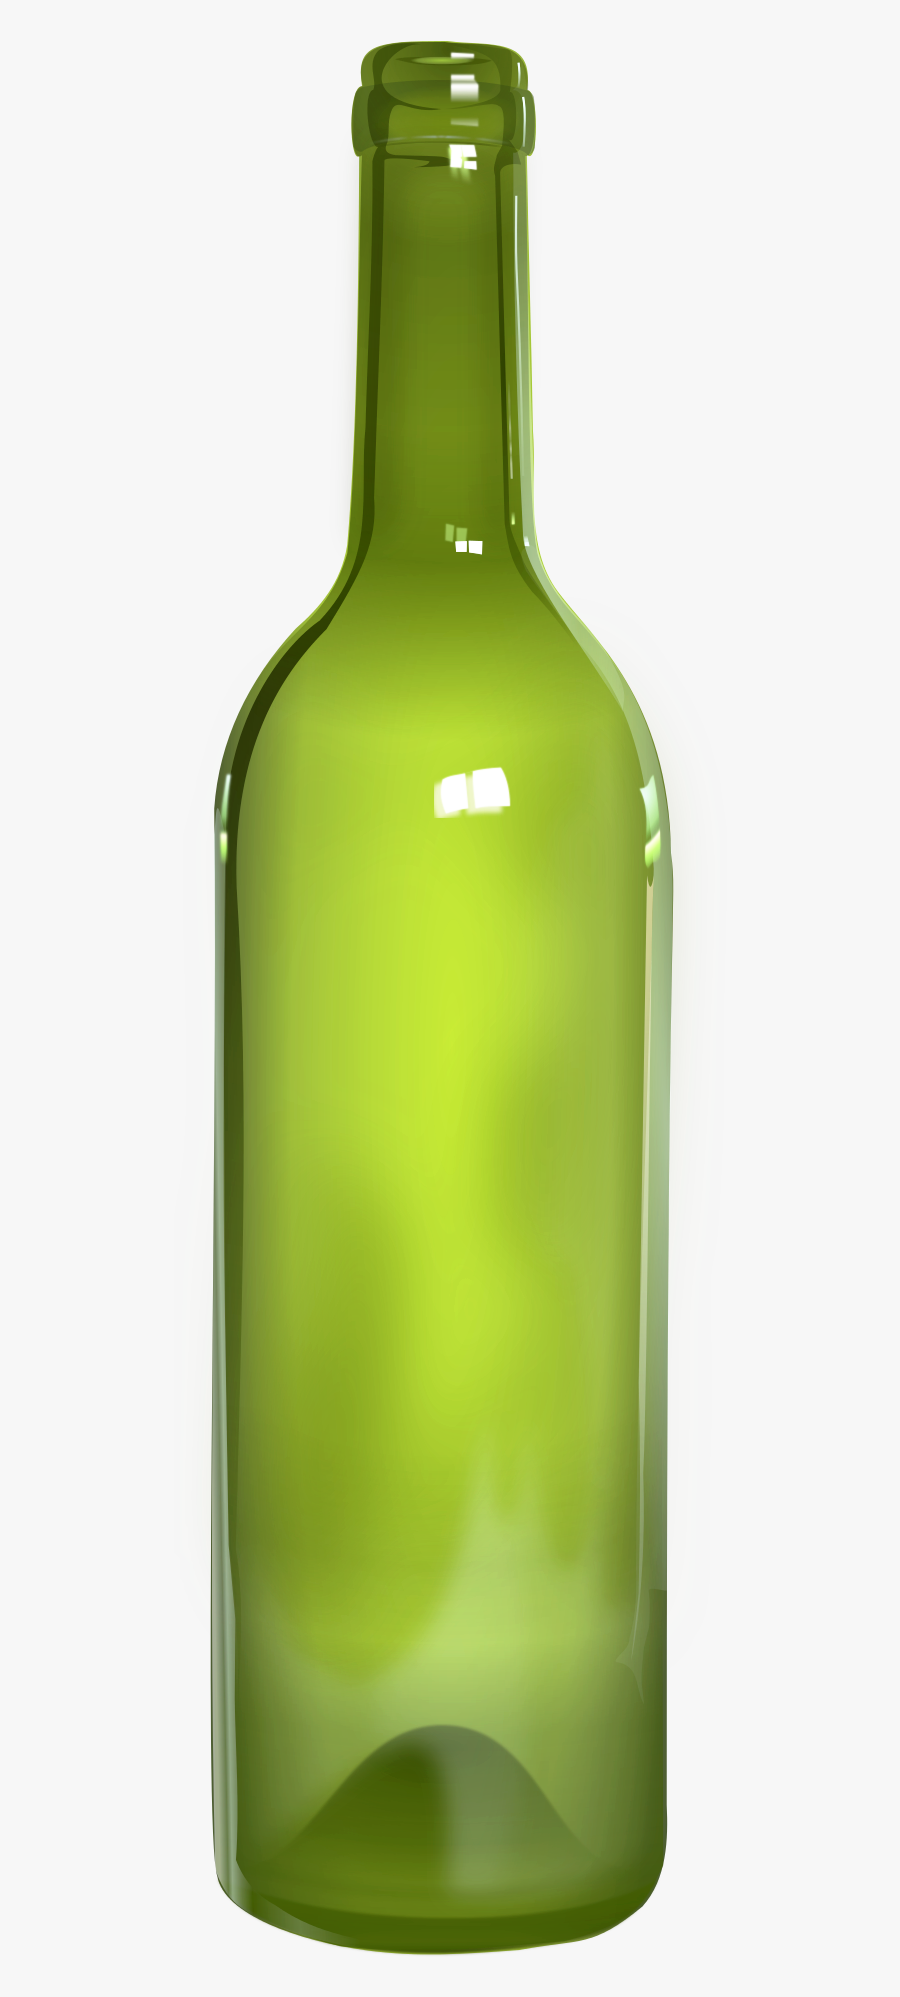 Bottle Transparent Background - Transparent Background Bottle Glass Png, Transparent Clipart